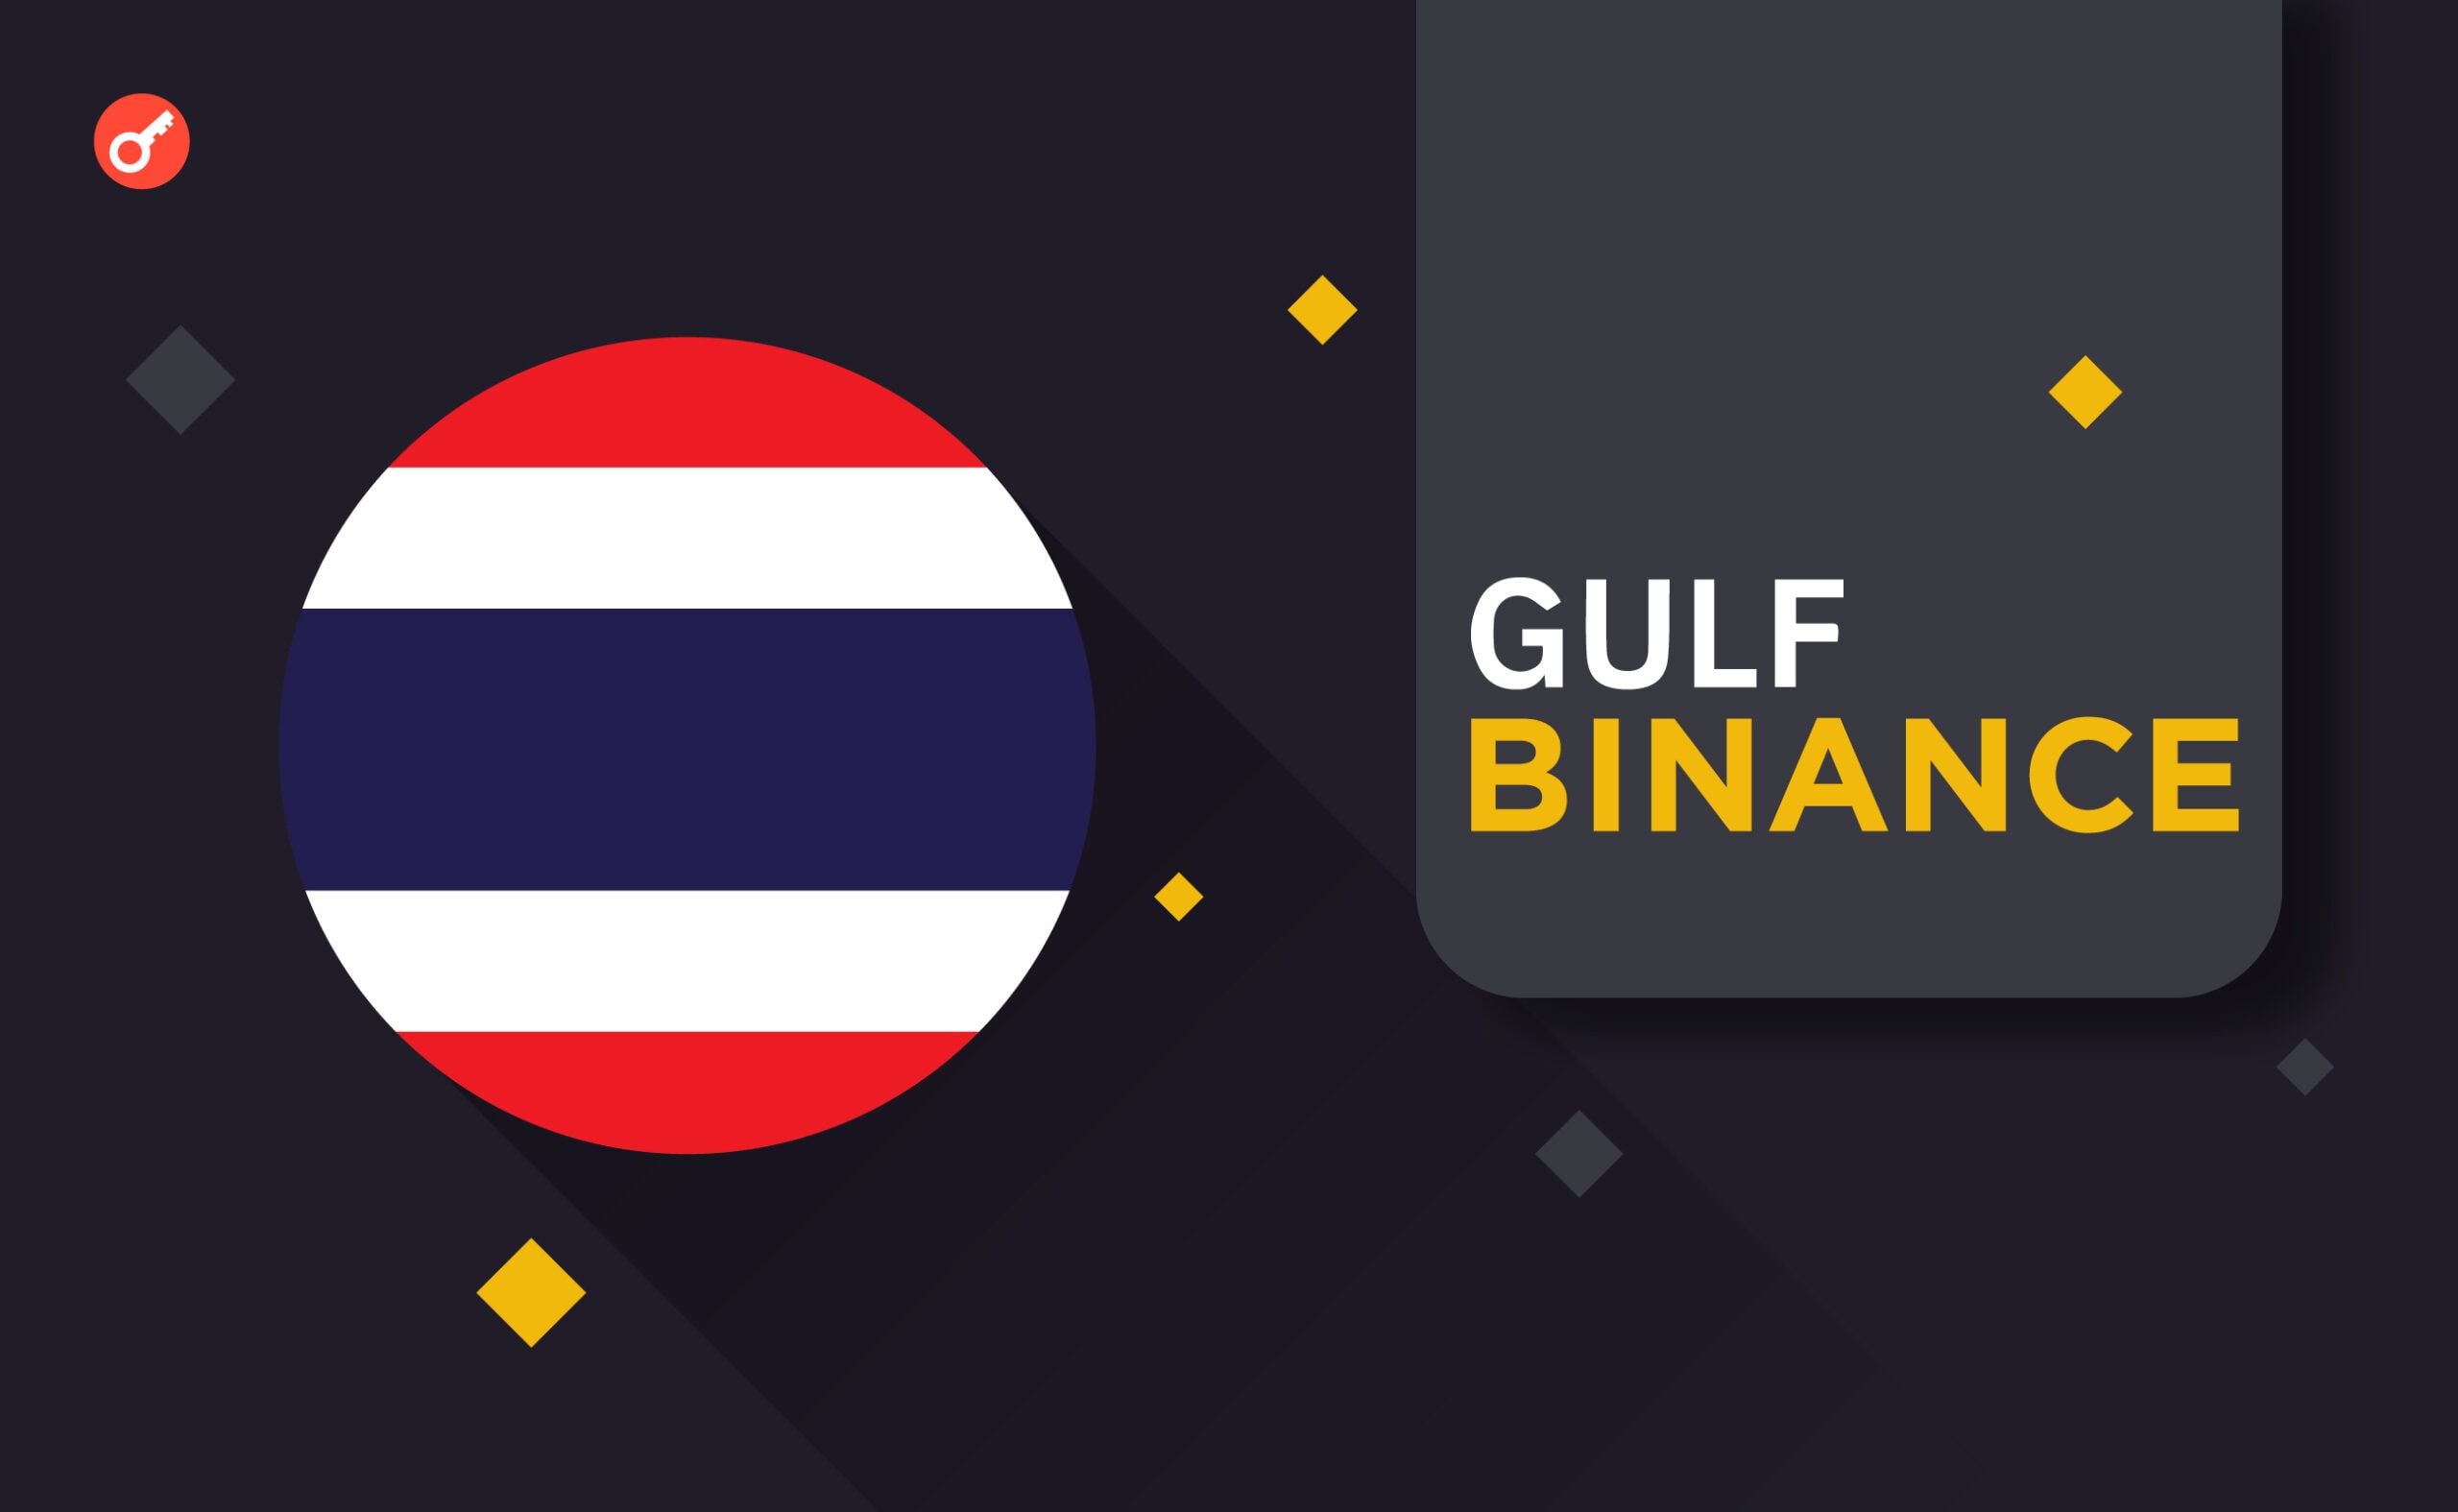 Біржа Gulf Binance отримала ліцензію оператора криптовалют у Таїланді. Головний колаж новини.